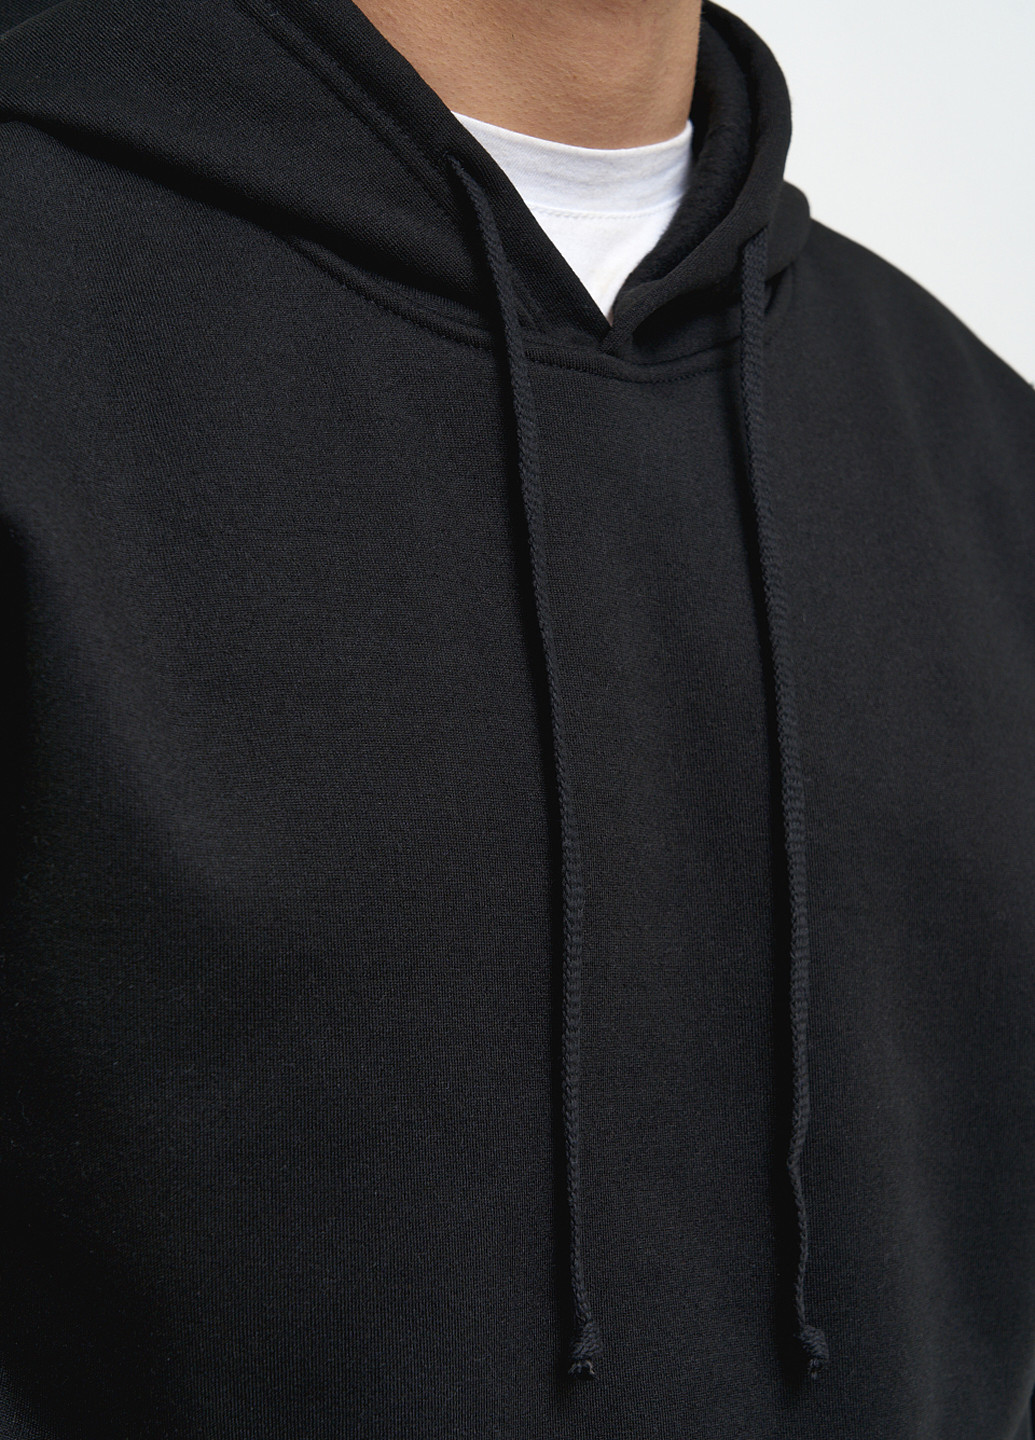 Костюм чоловічий на флісі (худі, джогери) KASTA design однотонний чорний спортивний трикотаж, бавовна, фліс